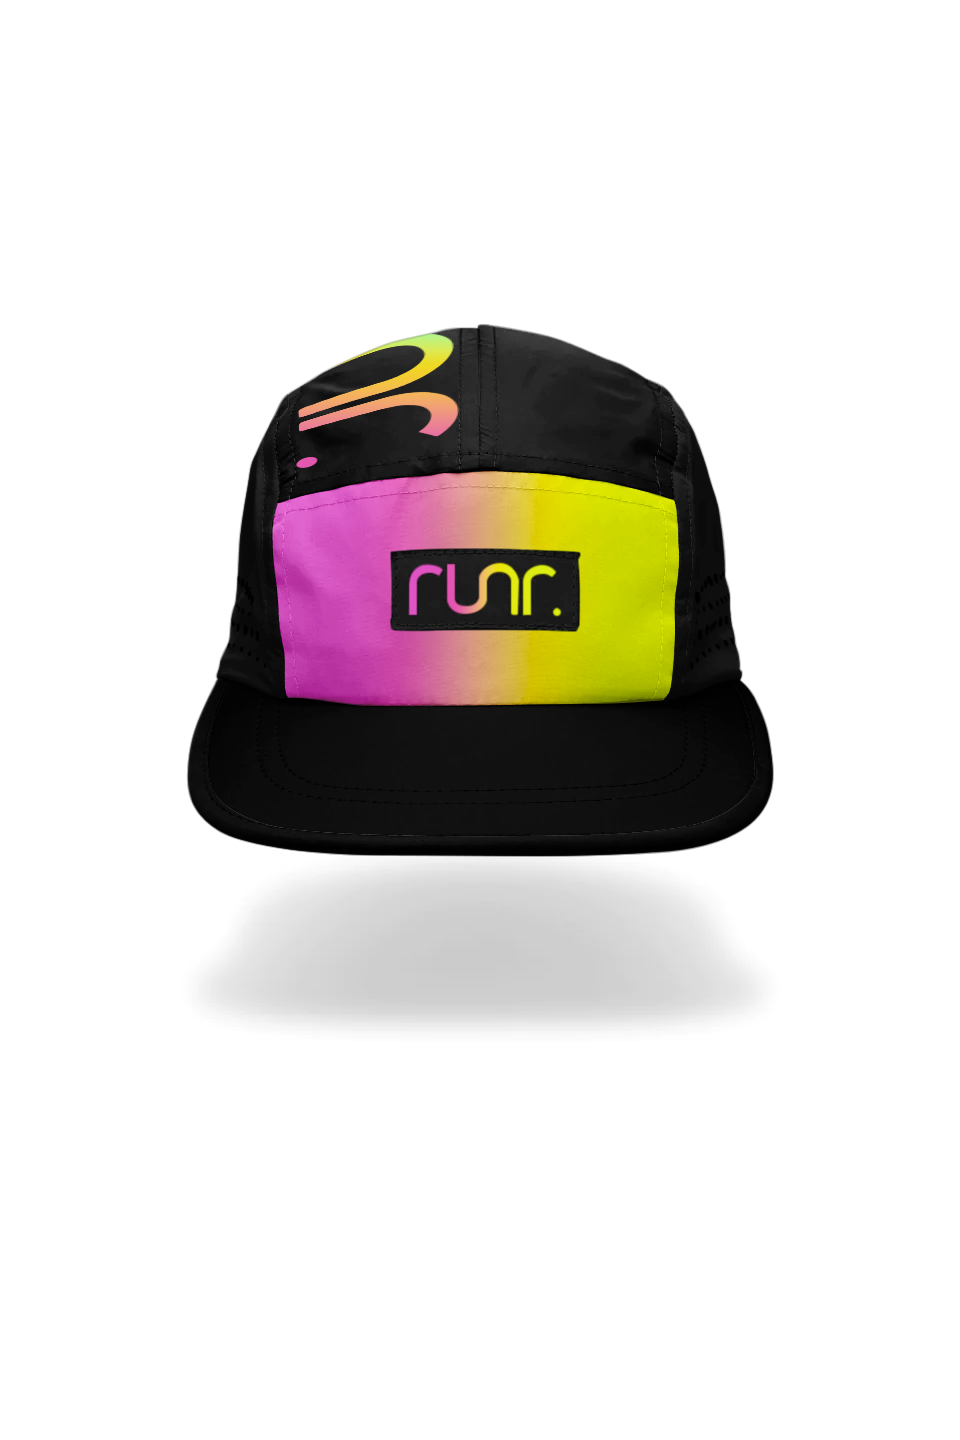 Runr New Mexico Running Hat